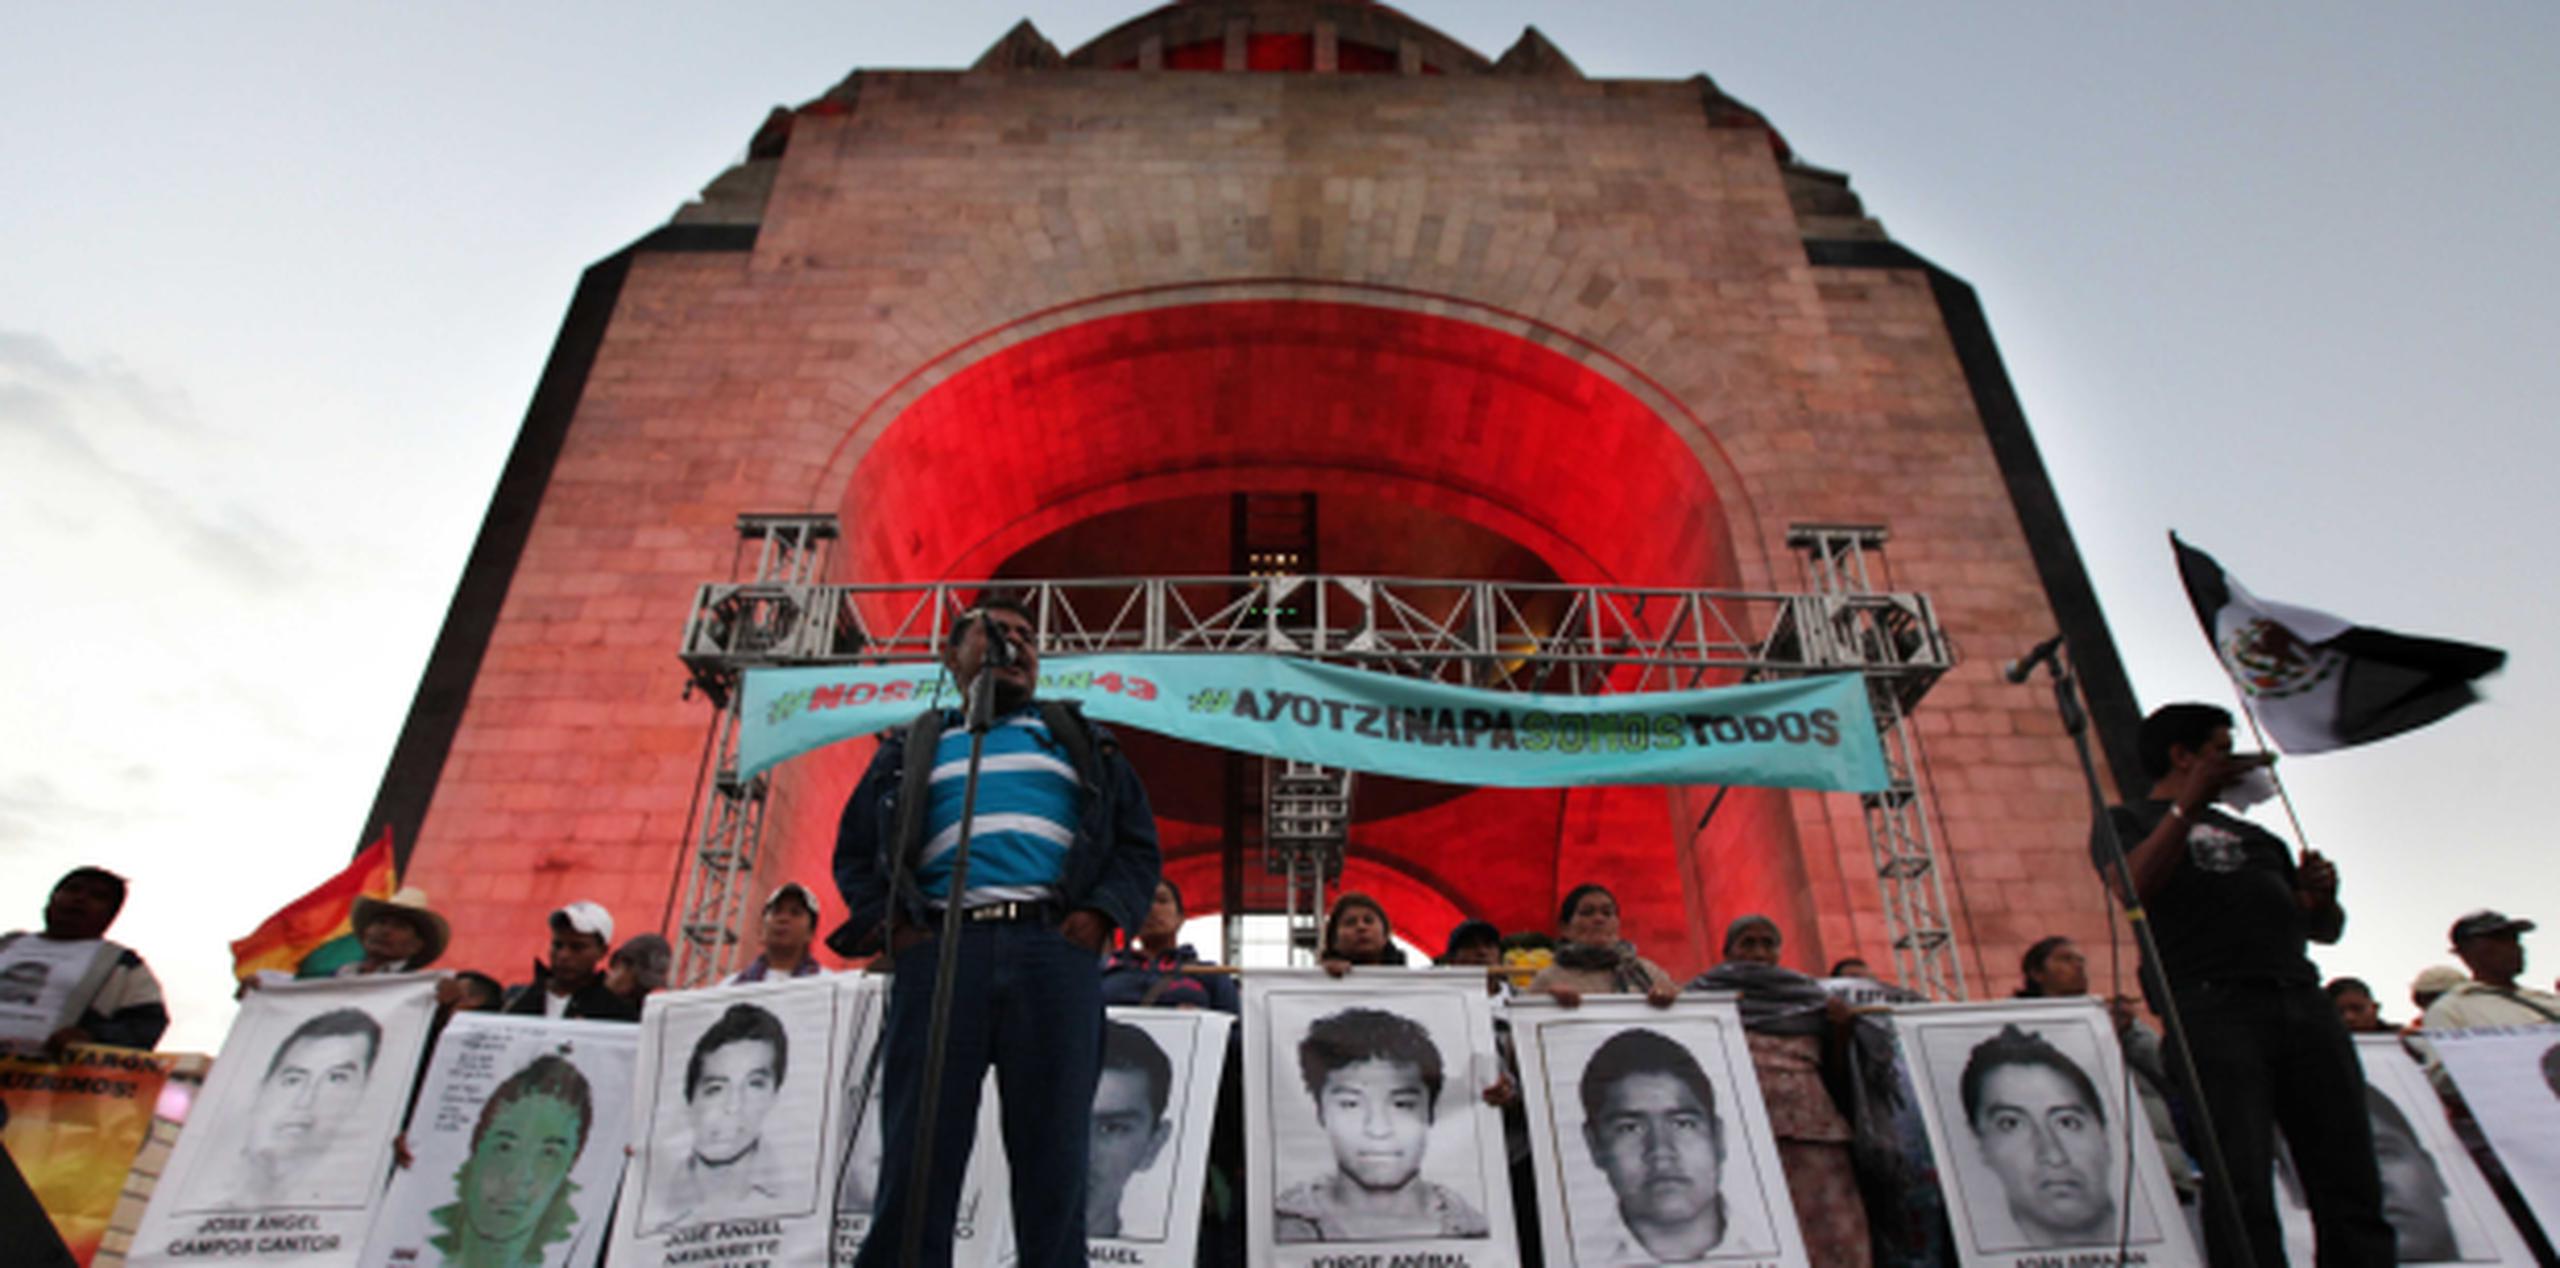 Los resultados de análisis del ADN corresponden a Alexander Mora Venancio, uno de los desaparecidos tras los hechos violentos en Iguala el pasado 26 de septiembre. (AP)